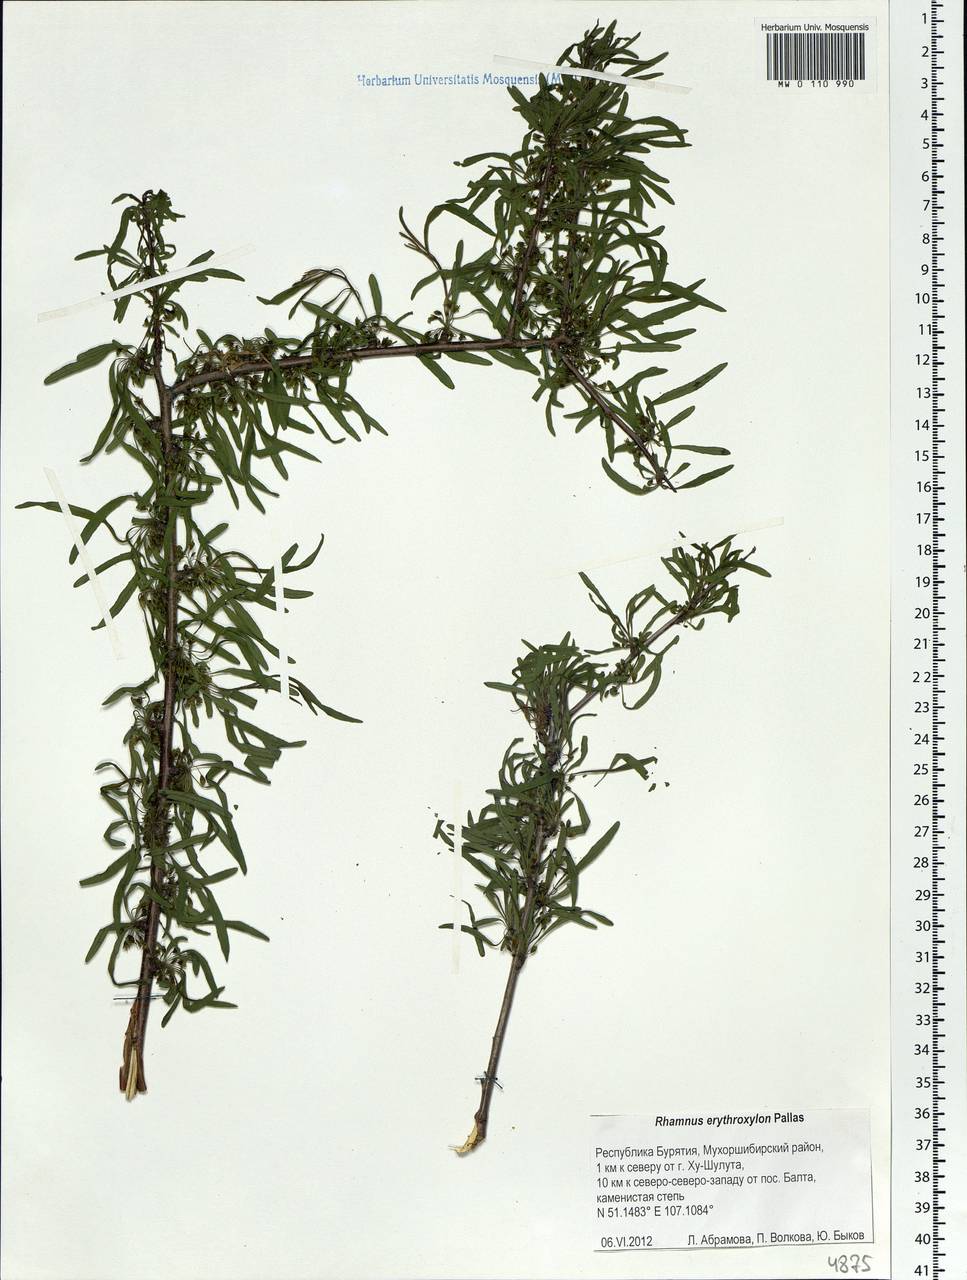 Rhamnus erythroxyloides subsp. erythroxyloides, Siberia, Baikal & Transbaikal region (S4) (Russia)